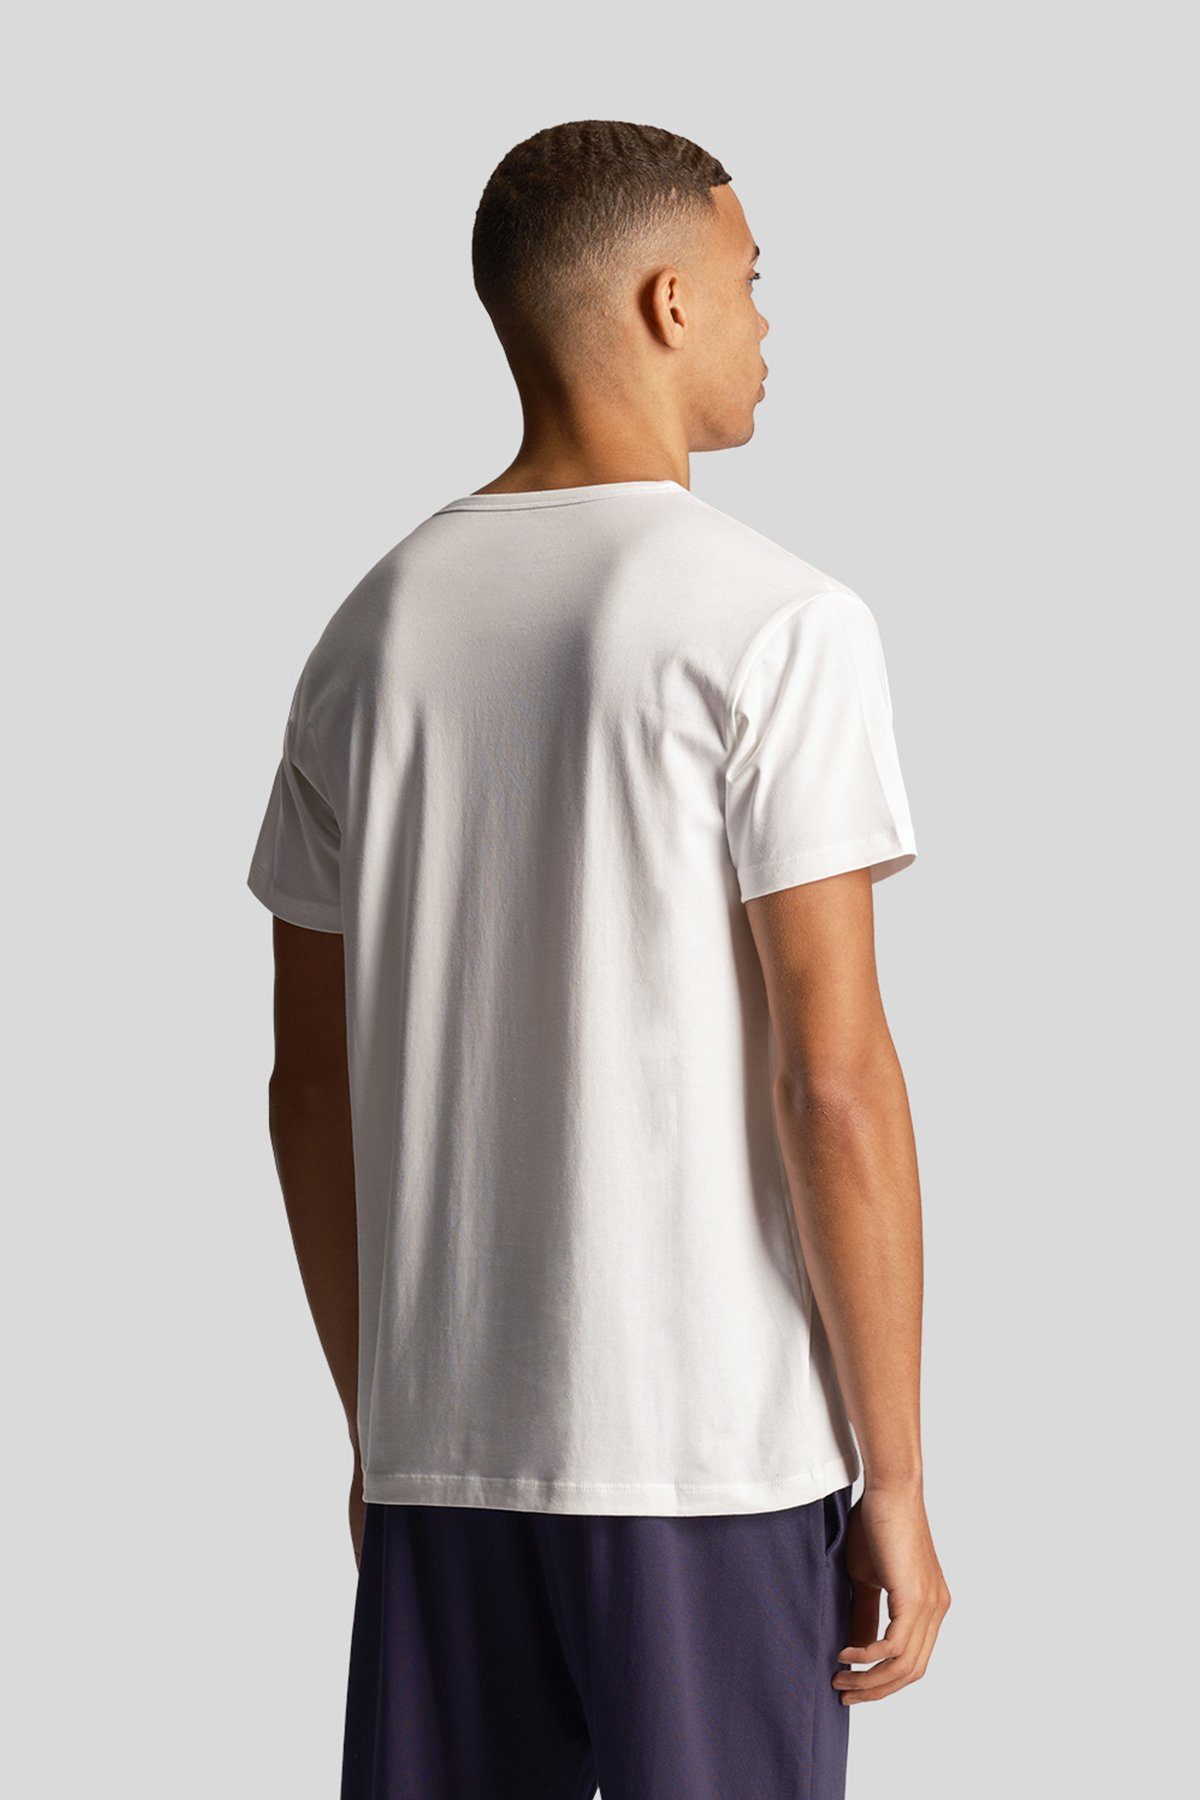 Tiefschwarz/ Mittelgrau Weiß & Lyle T-Shirt Basic Farben (3Er-Set) Scott meliert/